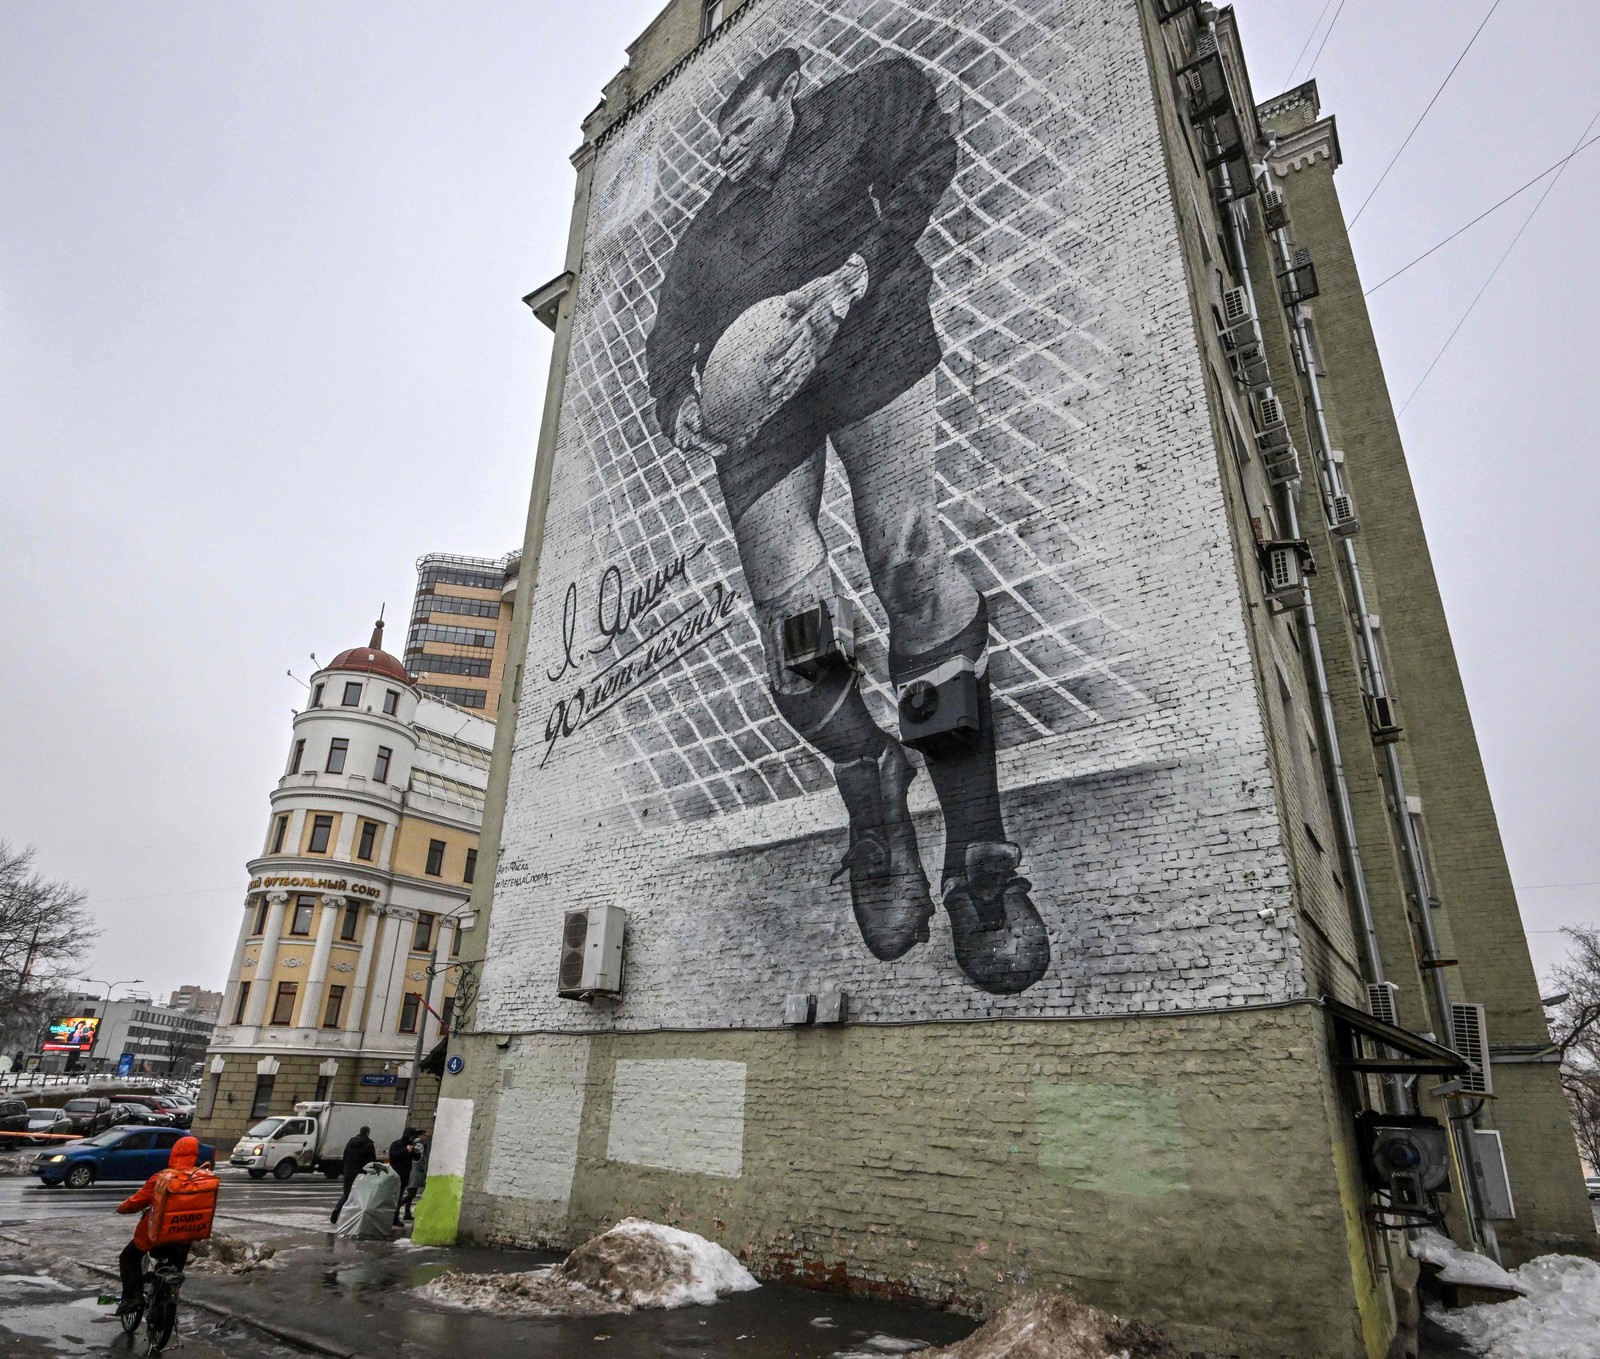 Sede da Federação Russa de Futebol tem mural pintado com imagem do lendário goleiro da era da União Soviética, Lev Yashin, na parede de uma casa vizinha no centro de Moscou.  — Foto: Yuri KADOBNOV / AFP